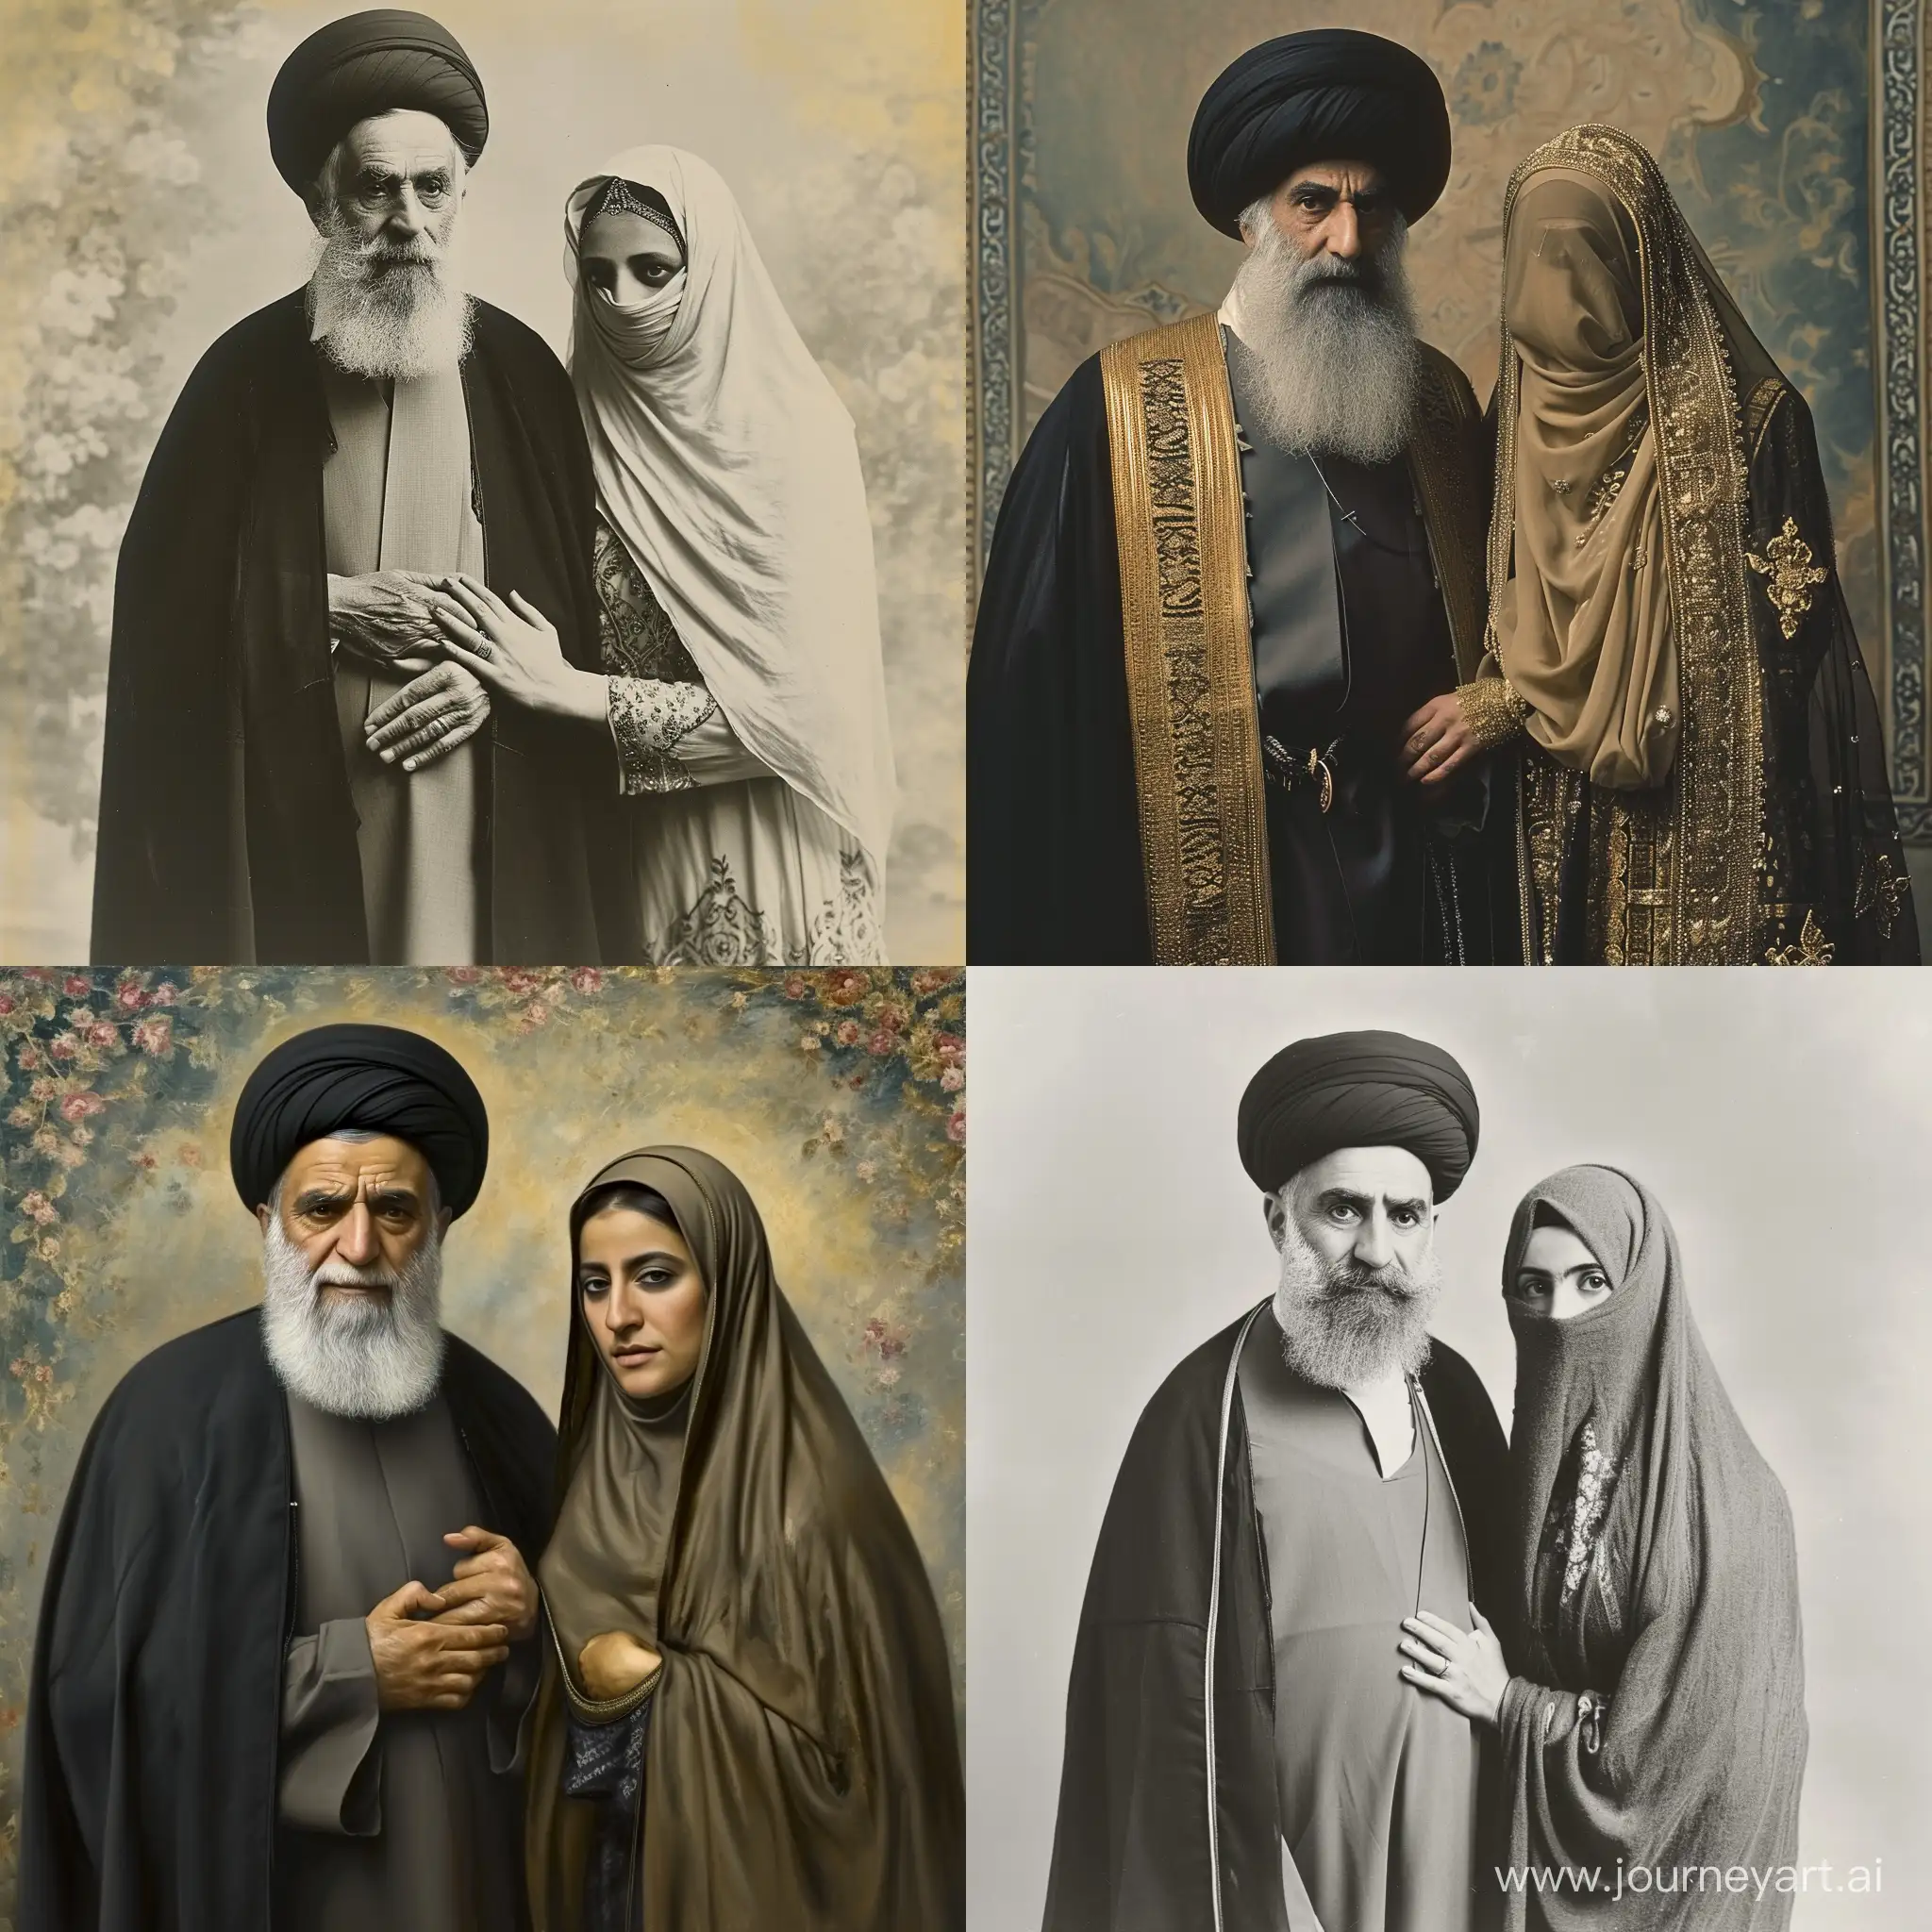 تصویر یک روحانی ایرانی در کنار یک خانم بی حجاب